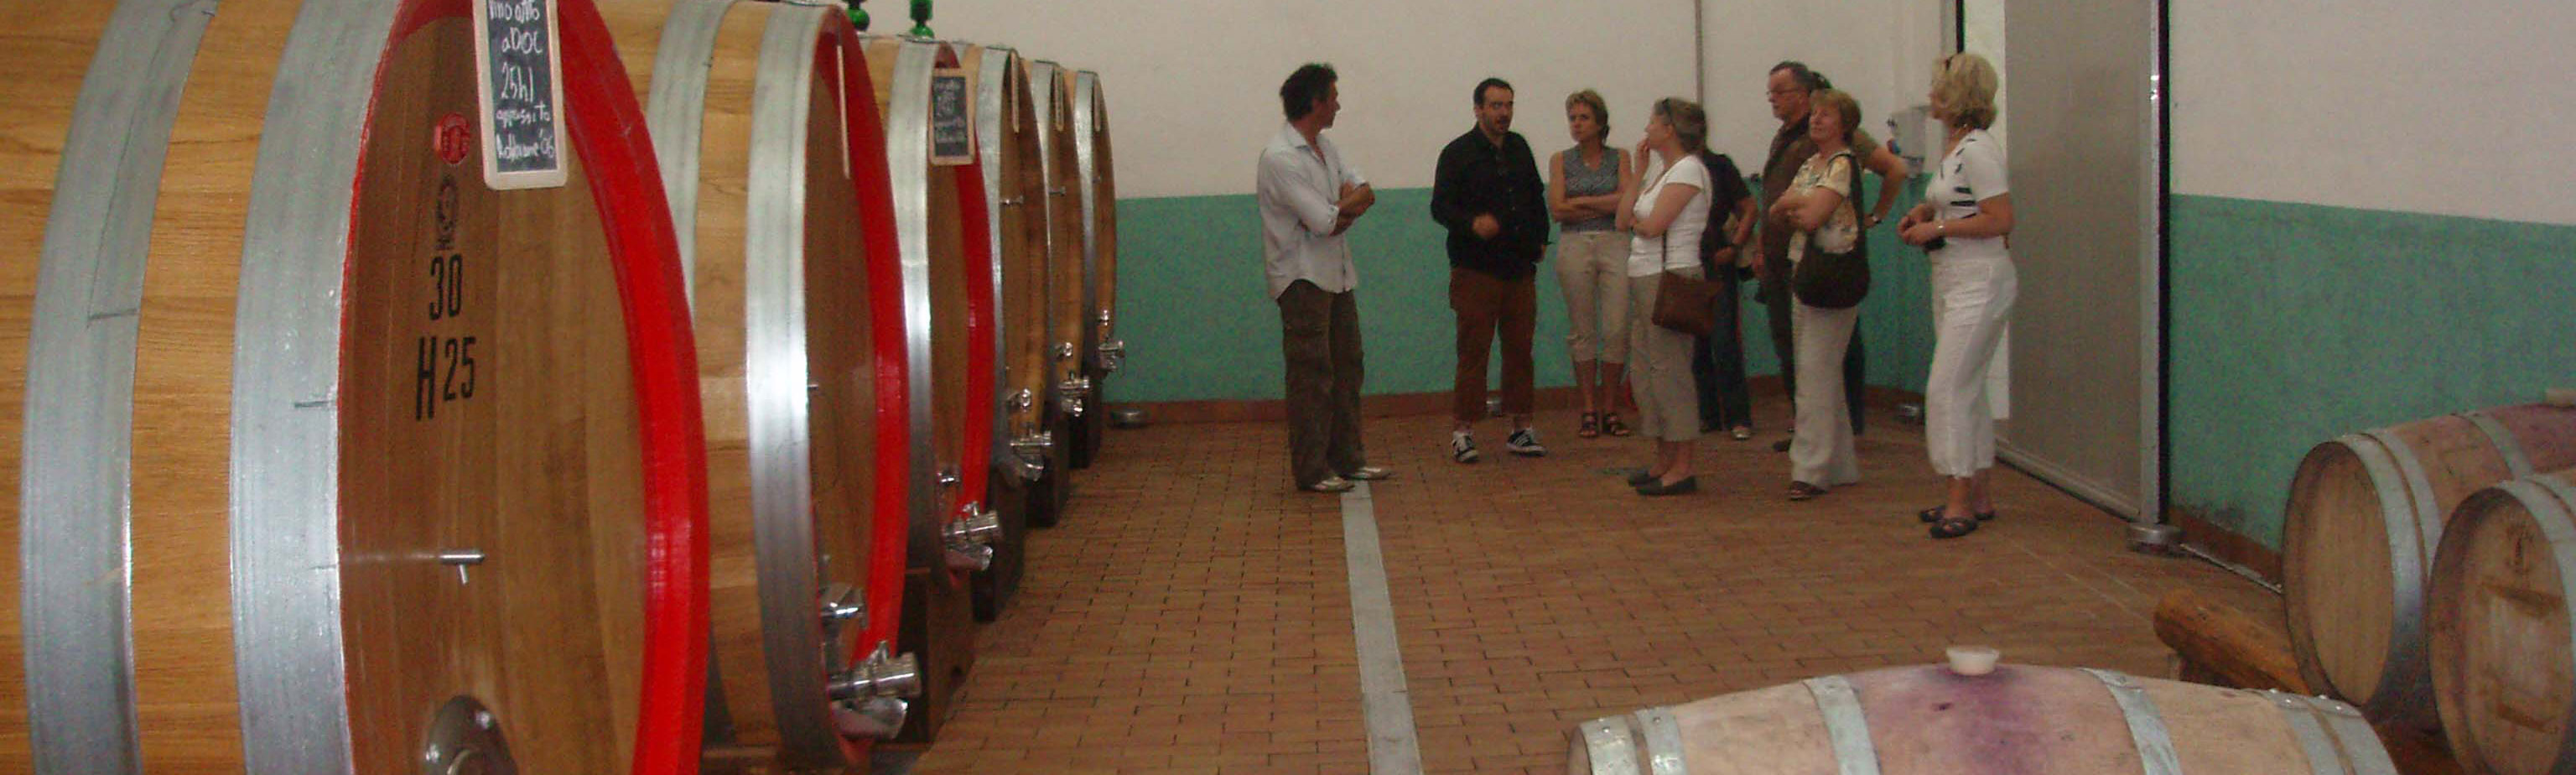 Excursies, Kookcursus, wijnproeverijen in Marche Umbrië